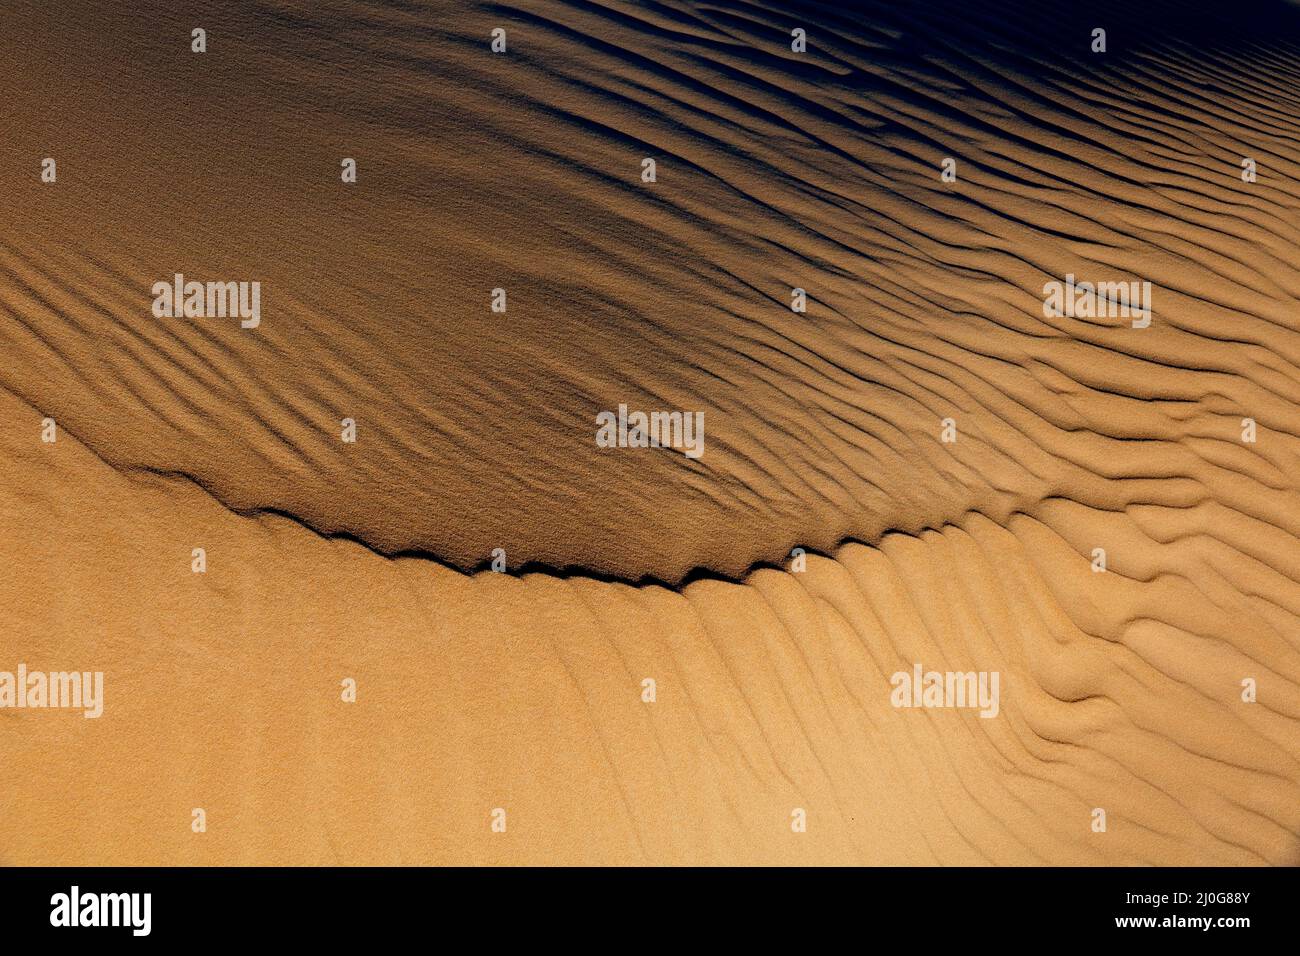 Modelli e strutture su una duna di sabbia deserta creata dal vento, Sud Africa Foto Stock